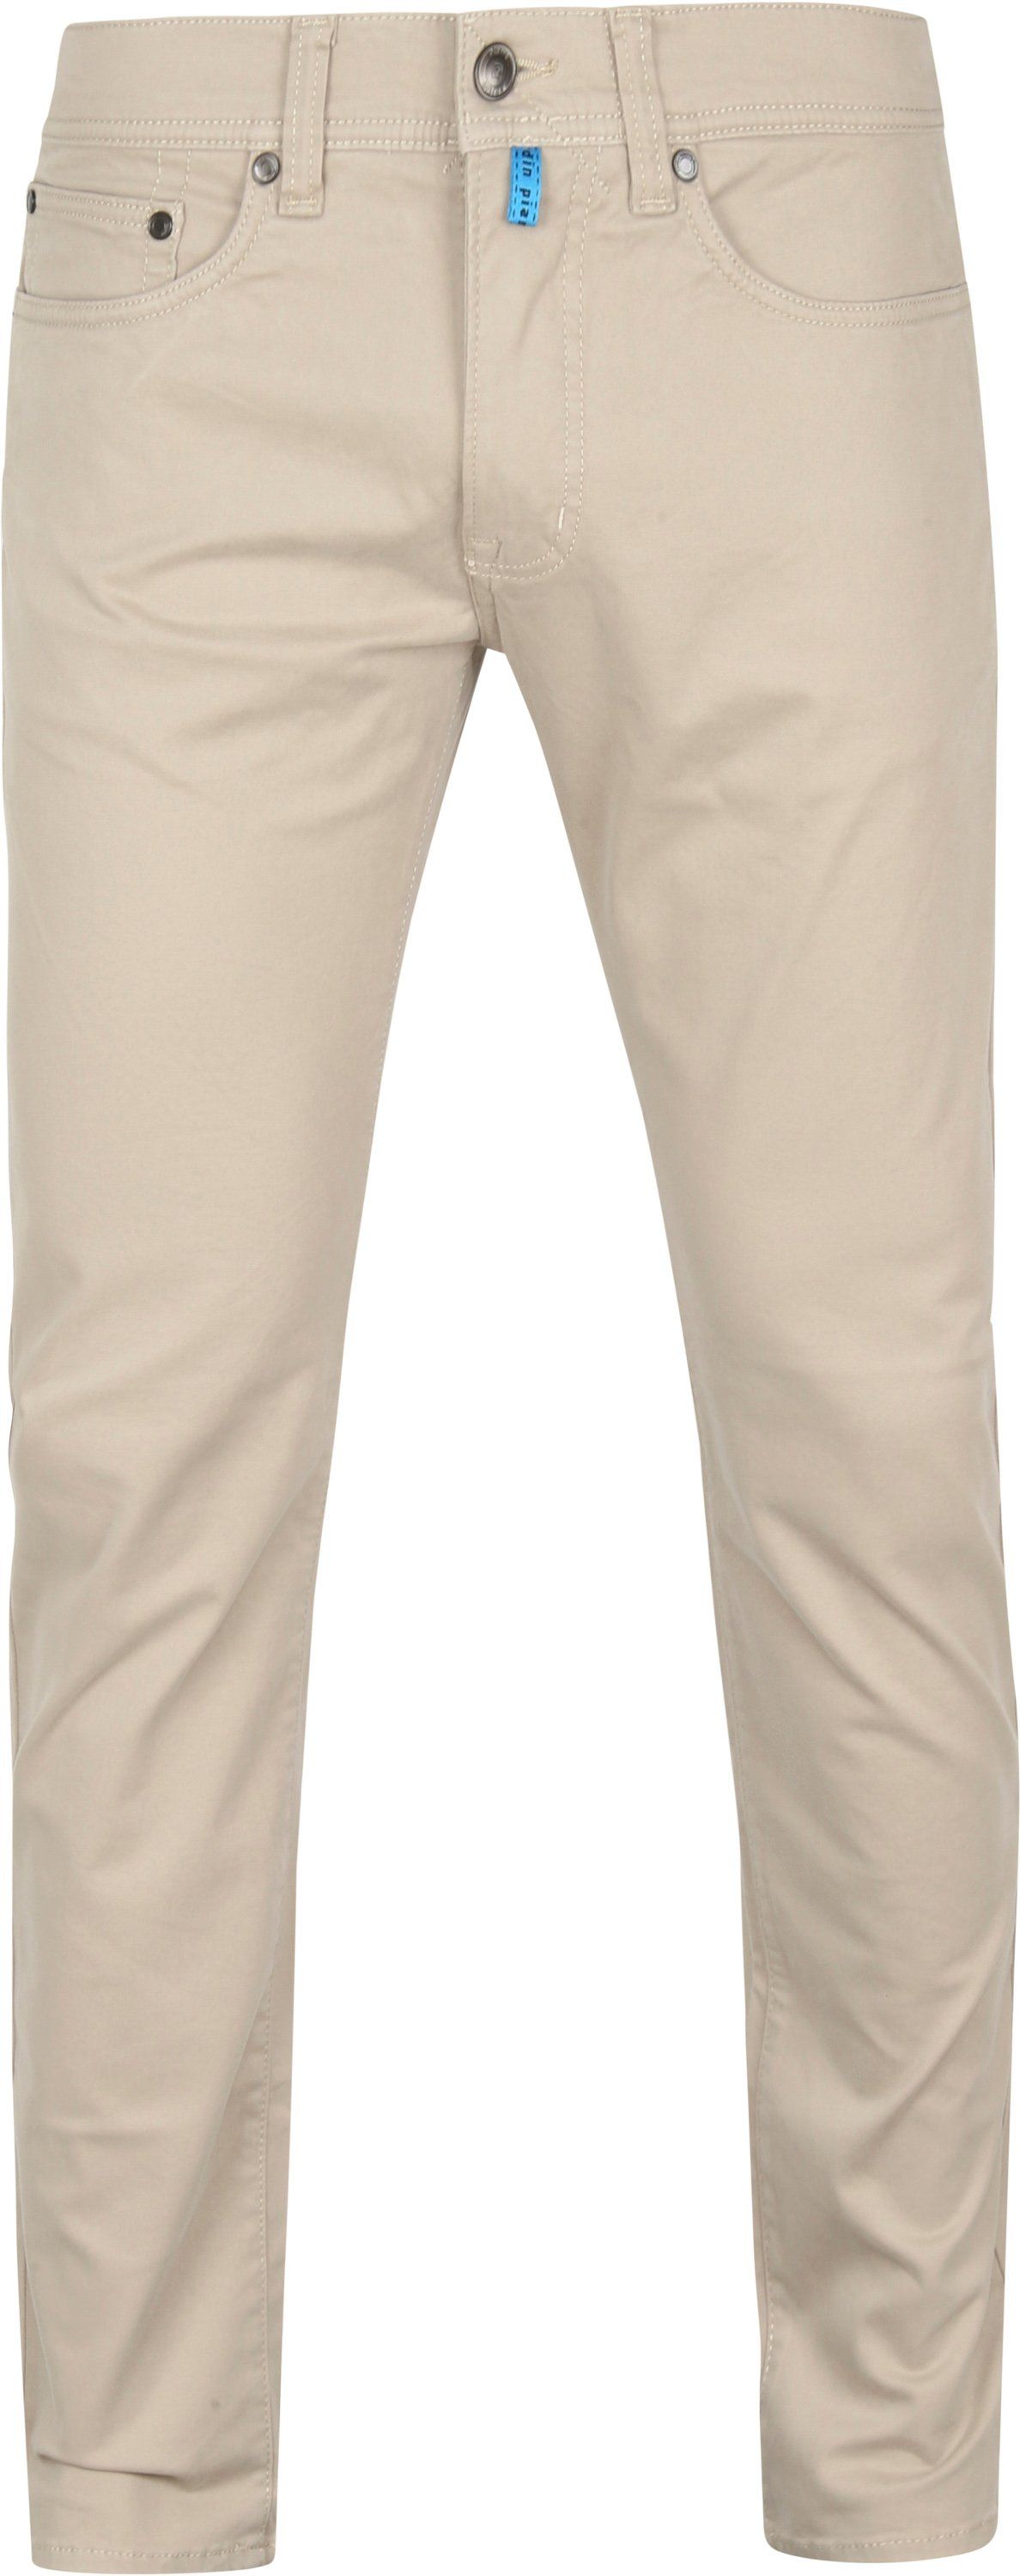 Pierre Cardin 5 Pocket Pantalon Antibes Beige Kaki taille W 31